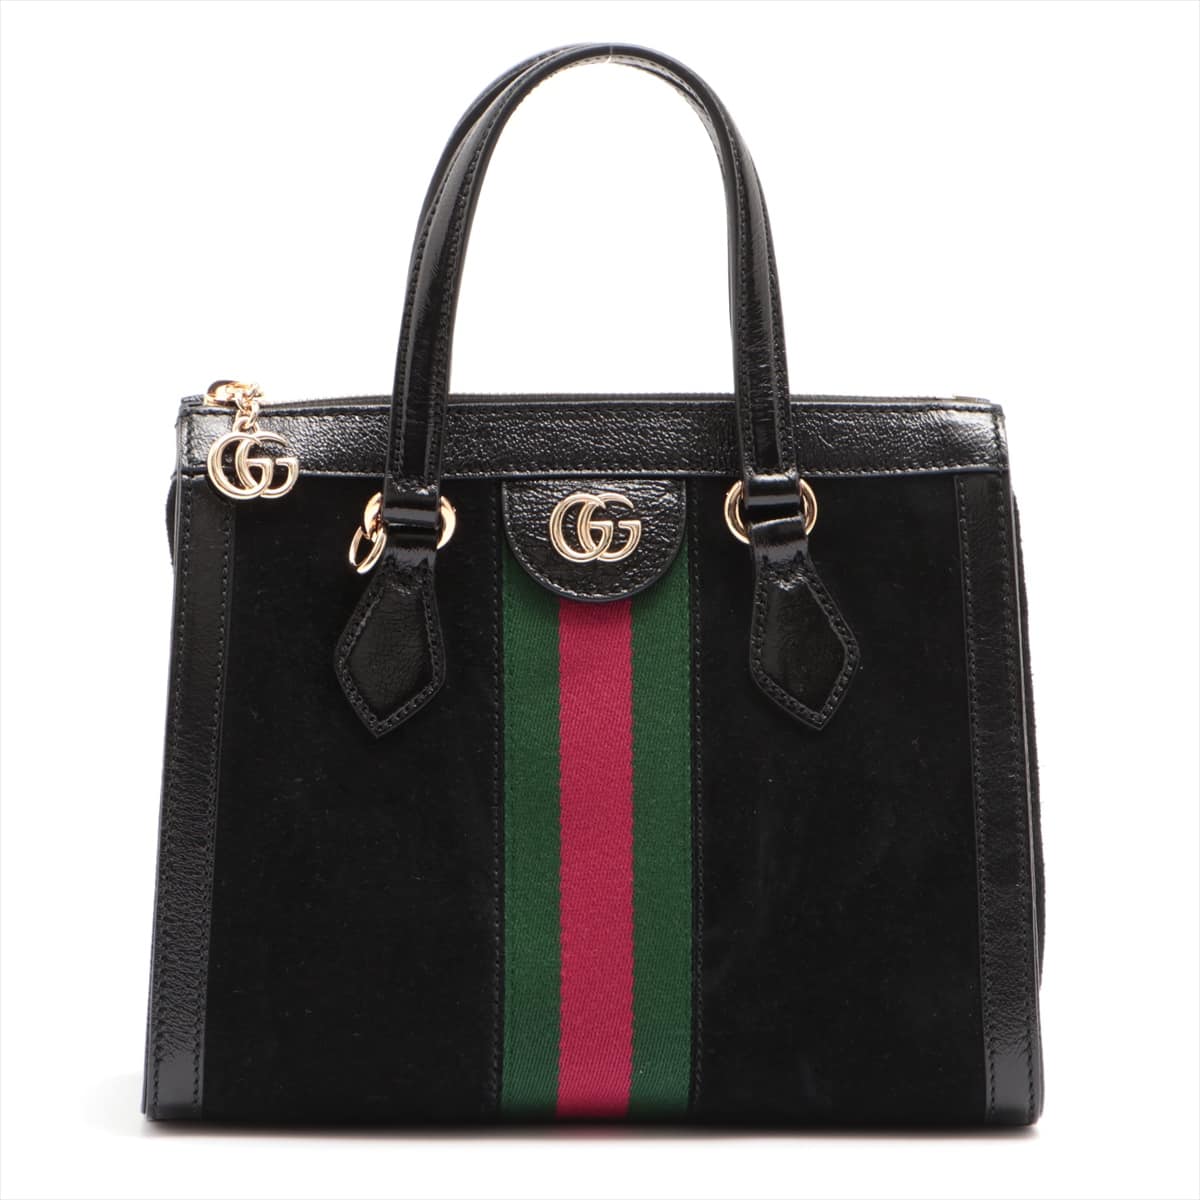 Gucci Ophidia Suede 2way handbag Black 547551